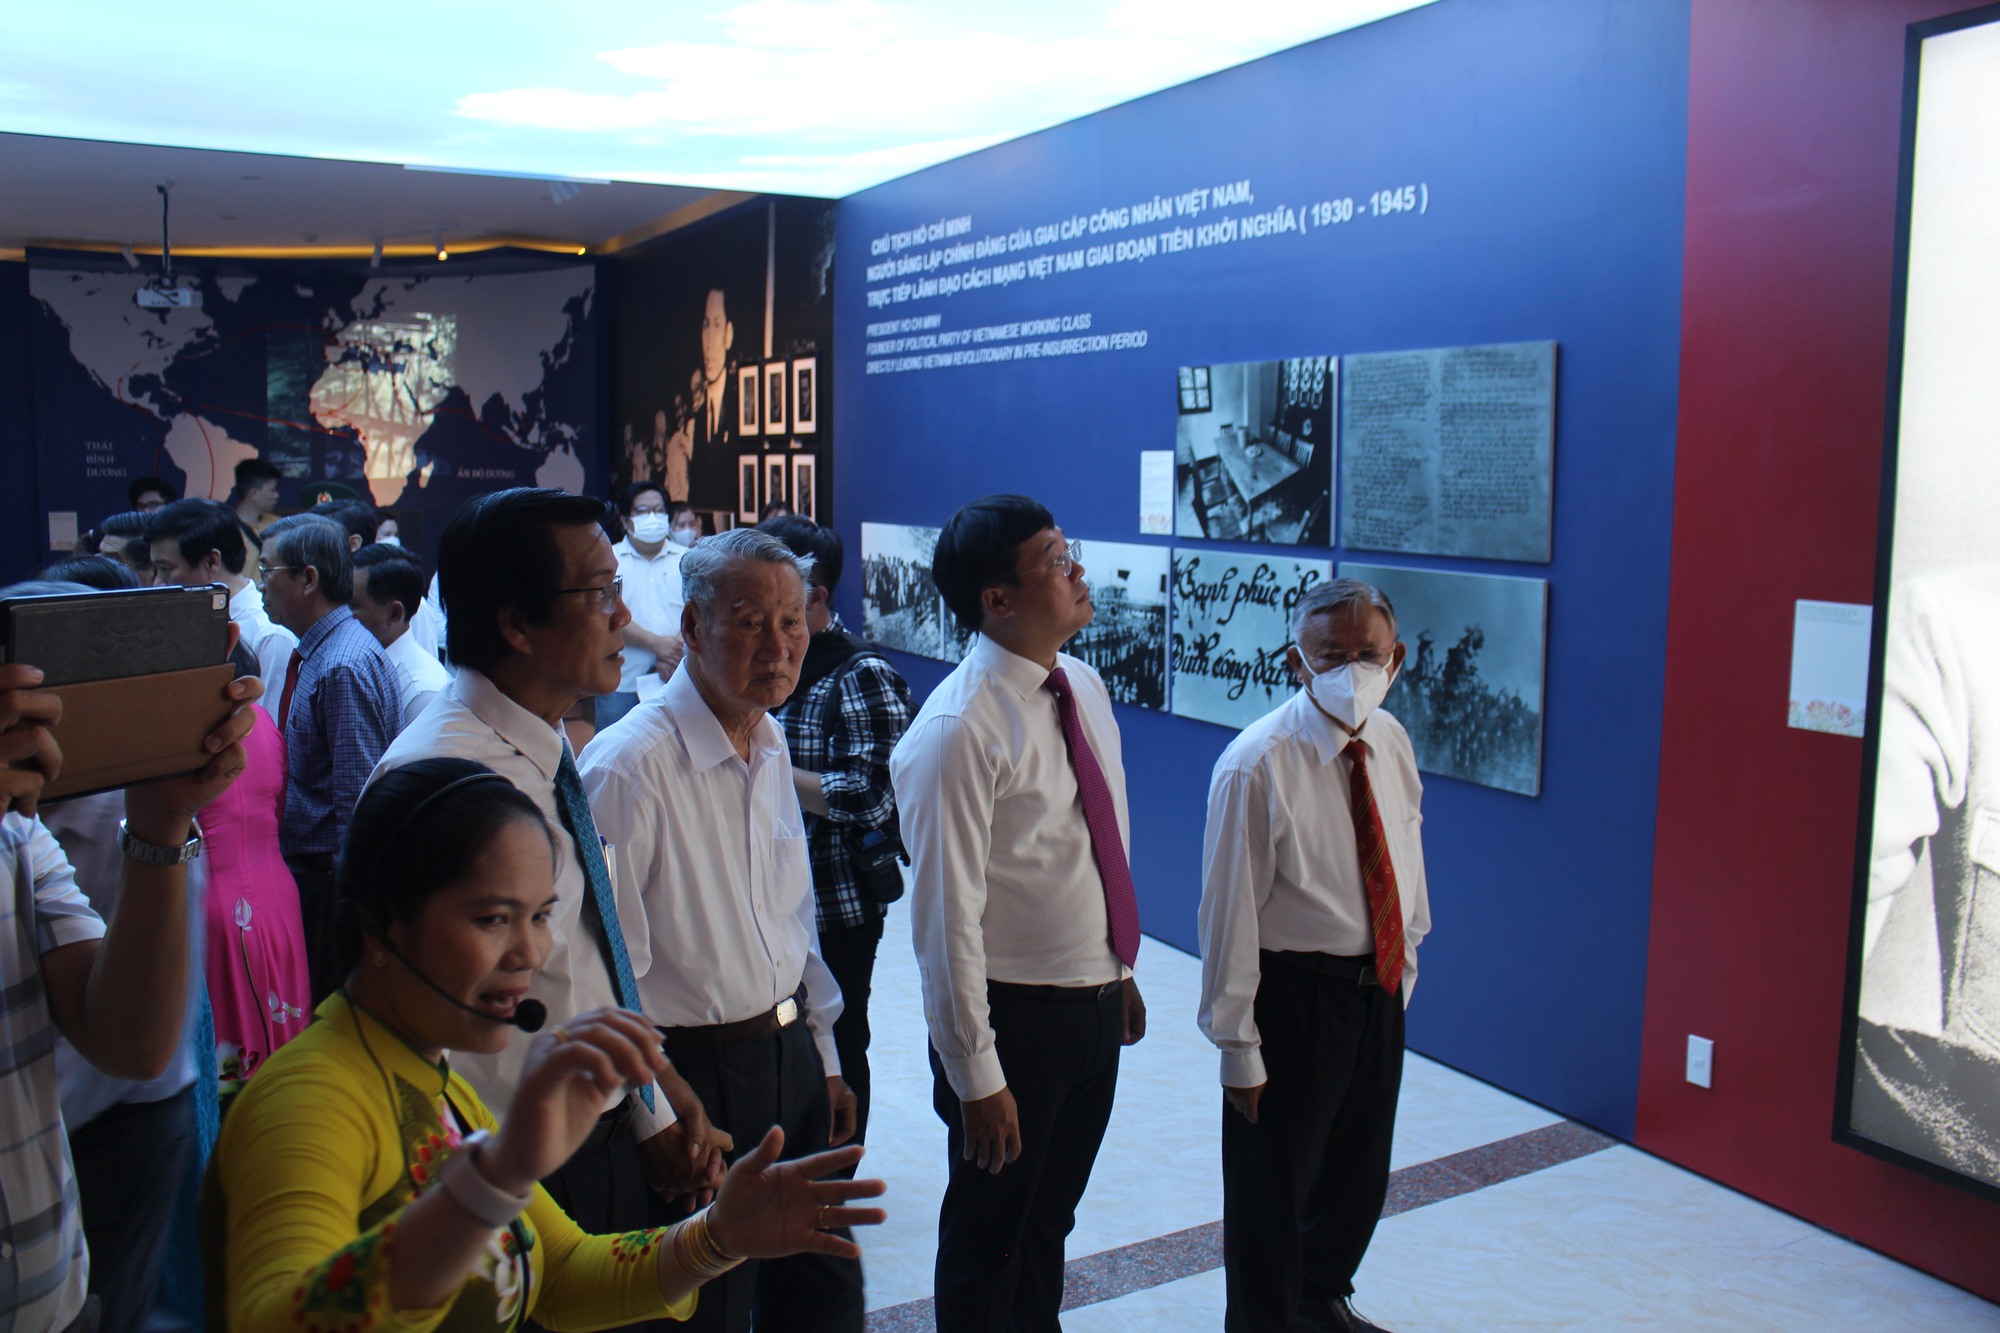 Ấn tượng Nhà trưng bày về Chủ tịch Hồ Chí Minh với Cách mạng Việt Nam - Ảnh 3.